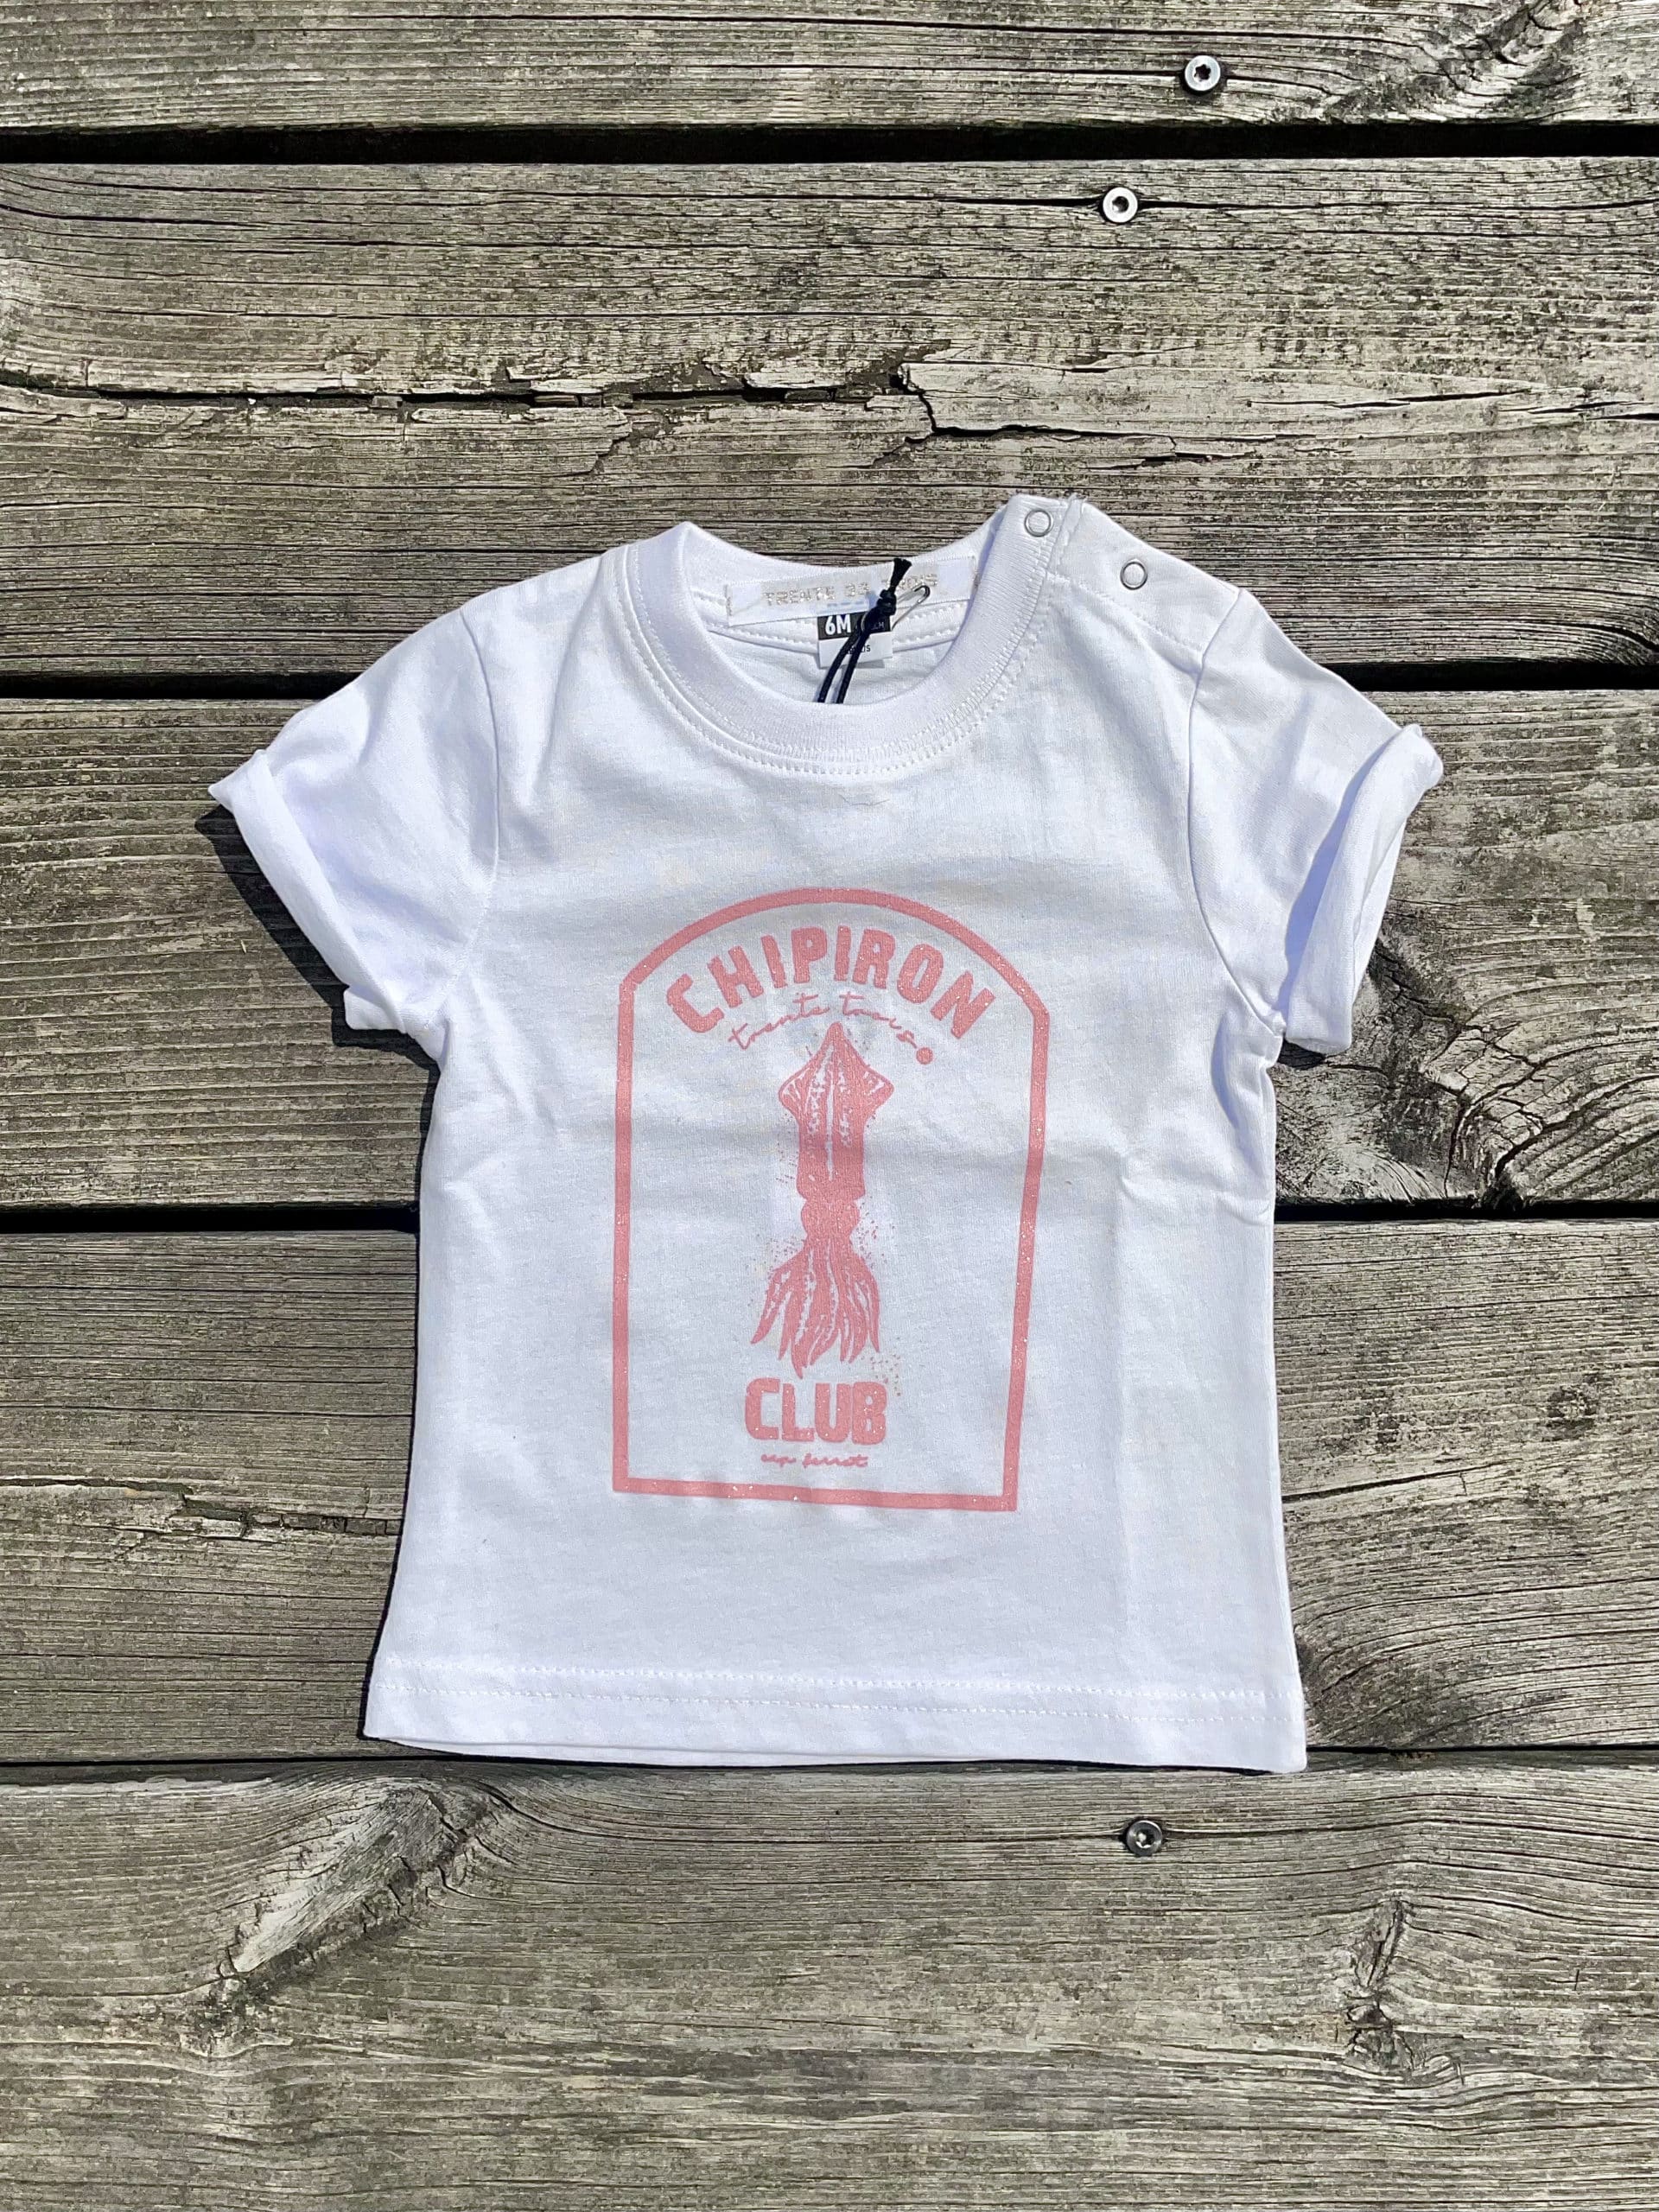 Un tee-shirt blanc pour bébé, estampillé "Chipiron" de la marque régionale 33.